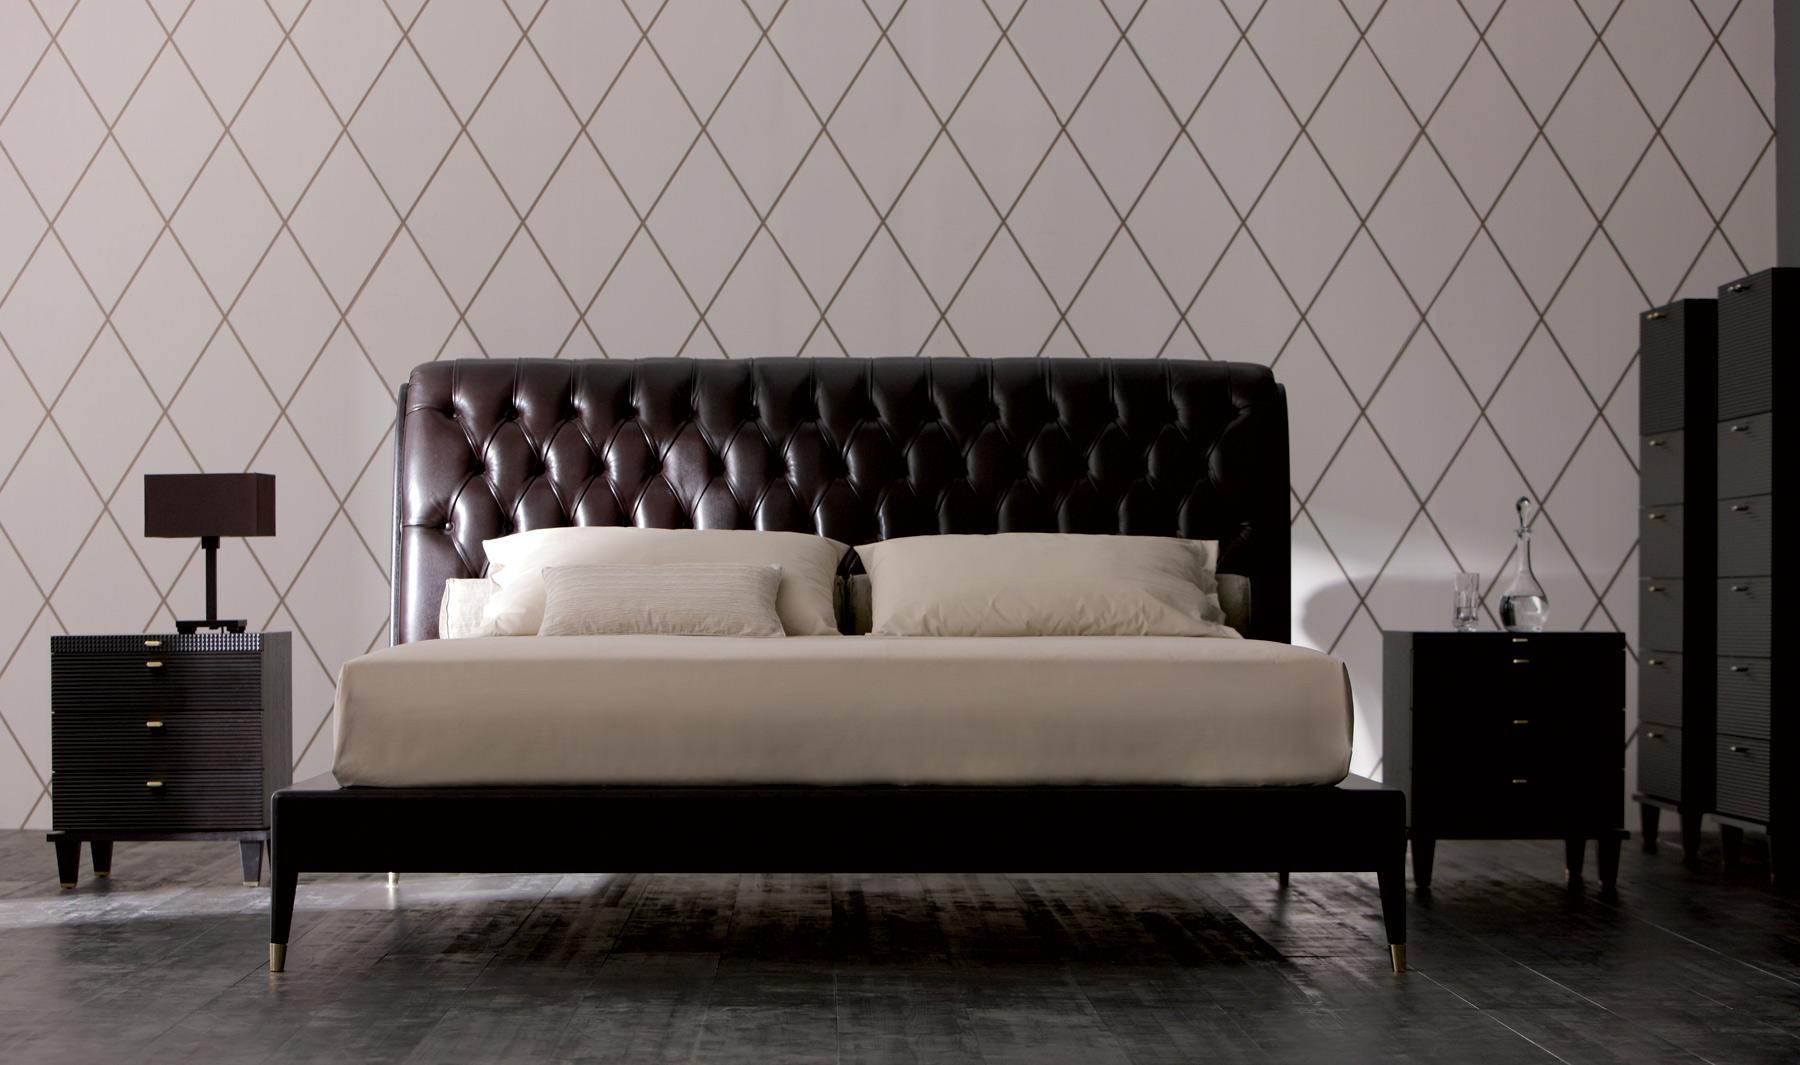 Edles Leder - fein verarbeitet - einzigartiges Bett #nachttisch #matratze ©Signature Home Collection